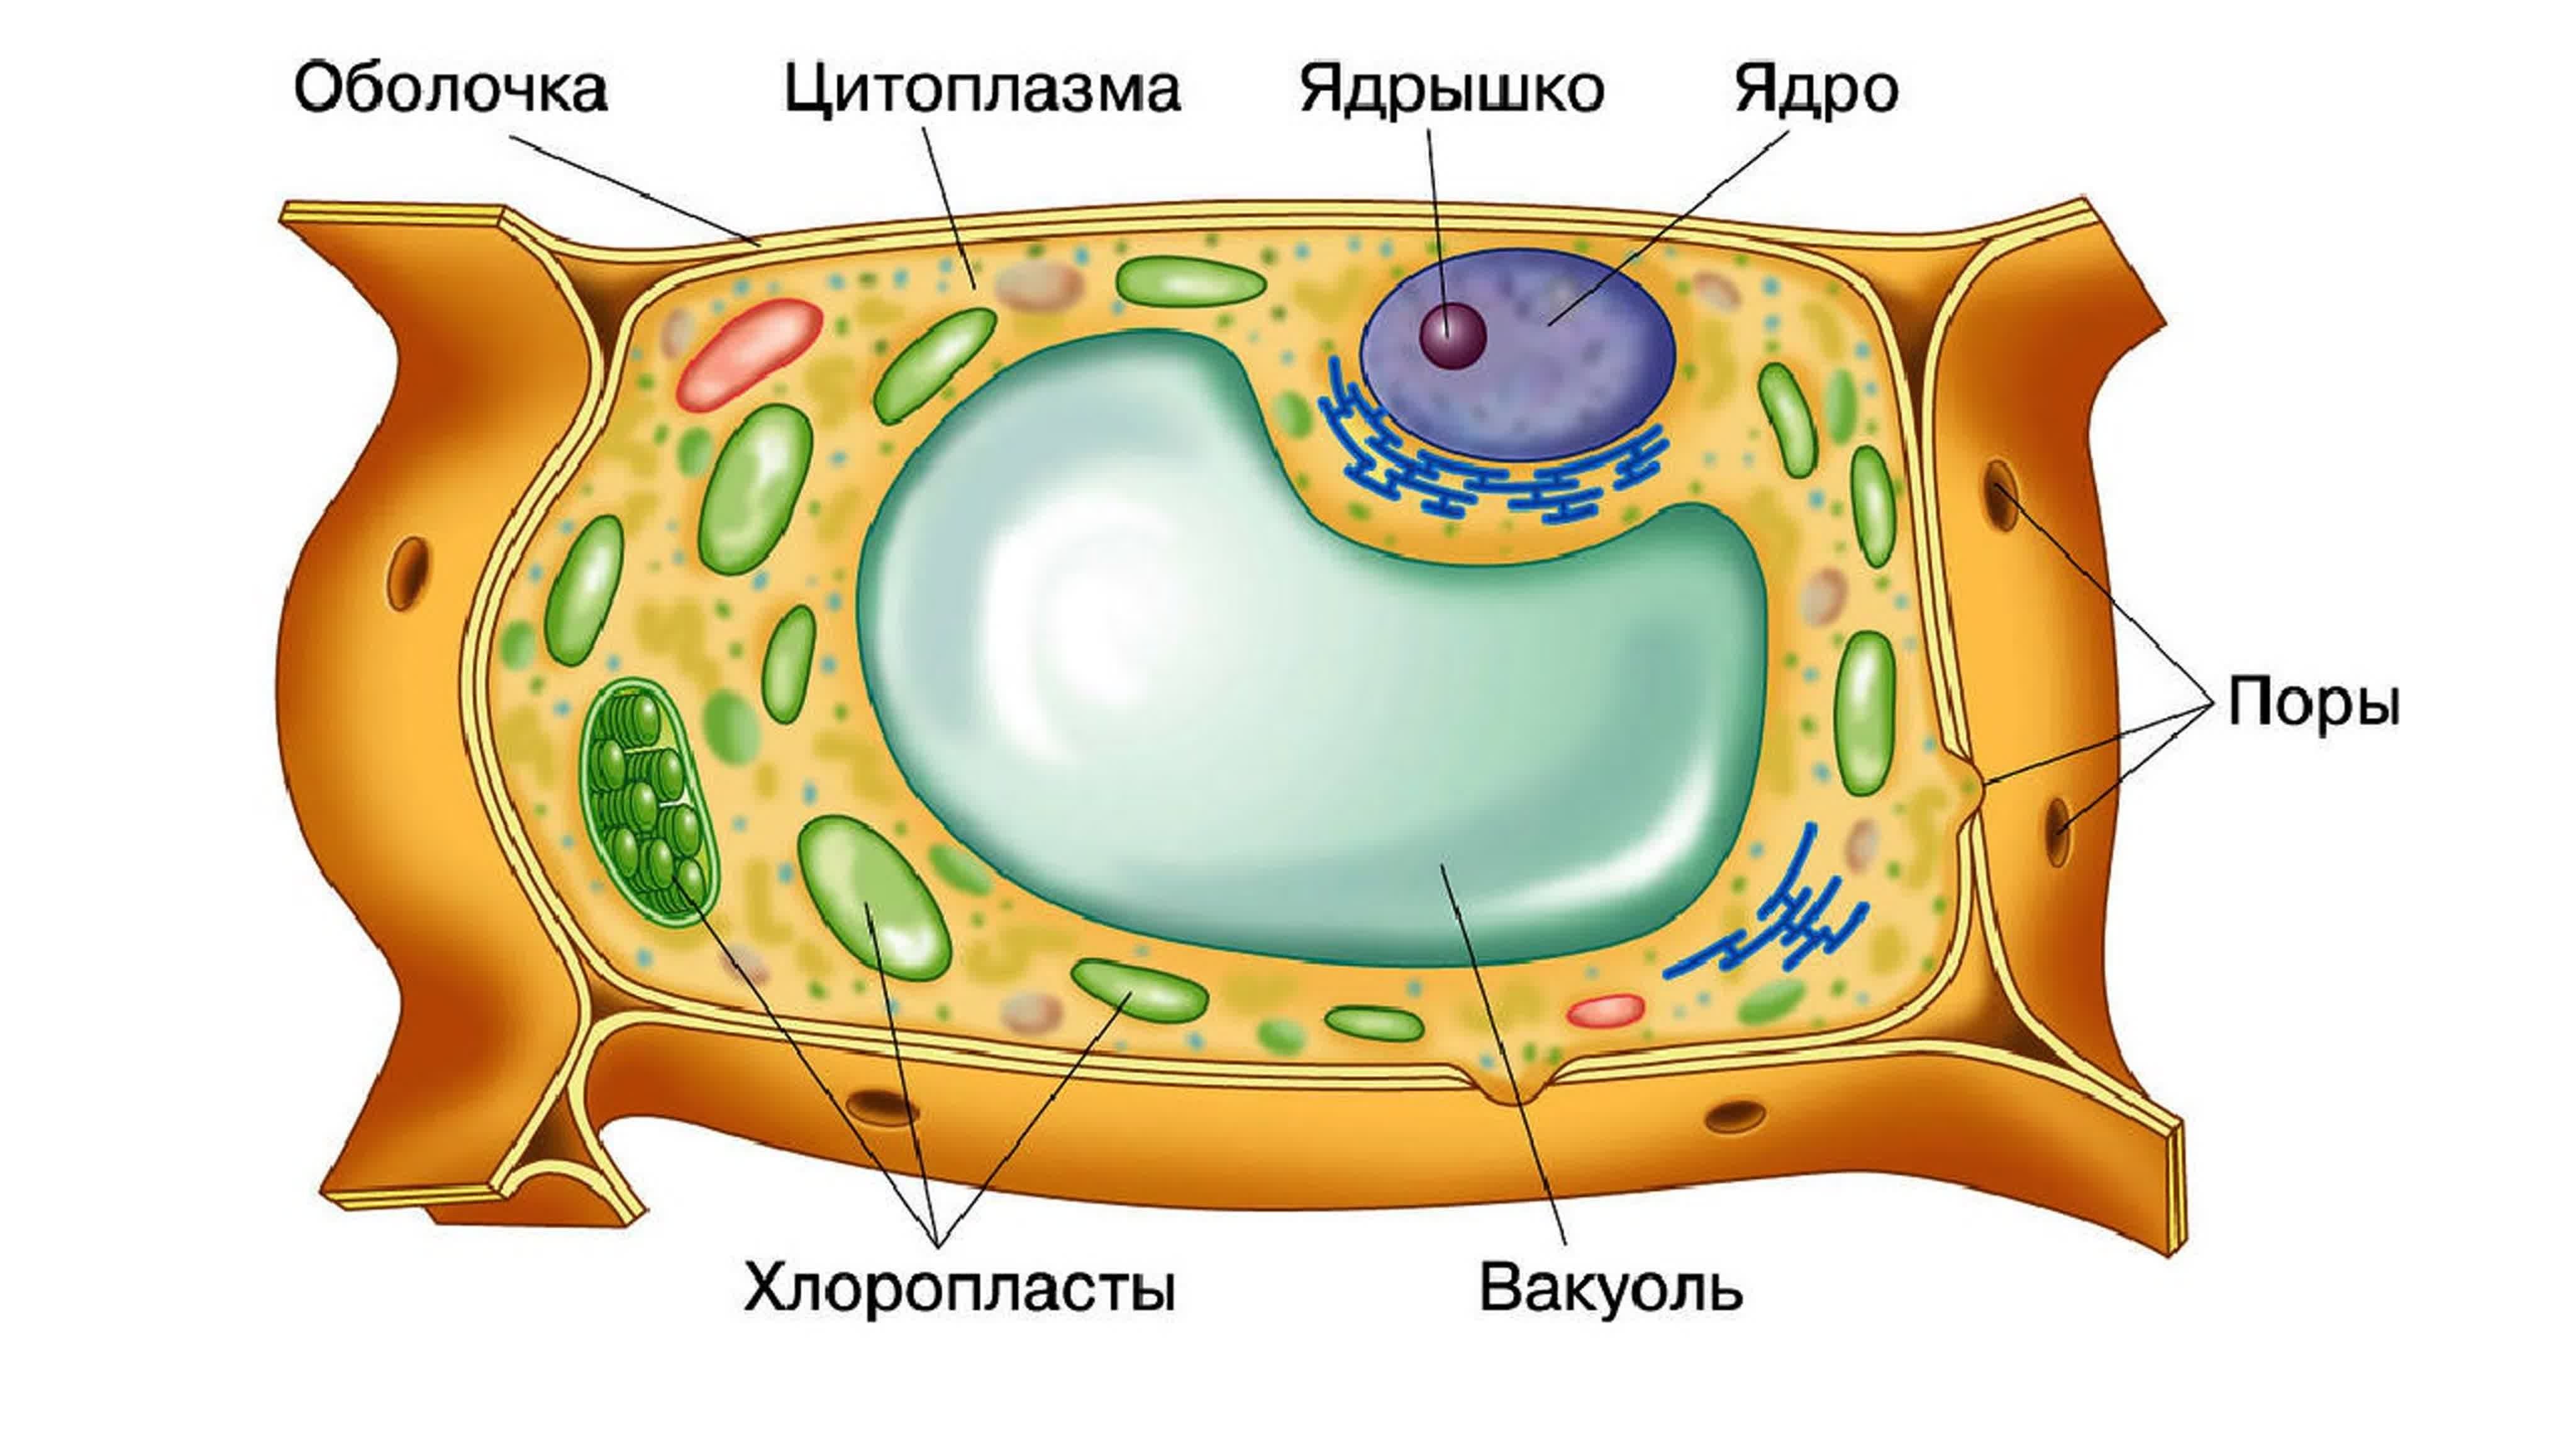 Клетка самое главное. Строение растительной клетки 5 класс биология. Строение клетки растения 5 класс биология. Строение растительной клетки 6 класс биология. Строение клетки 5 класс биология растительной клетки.